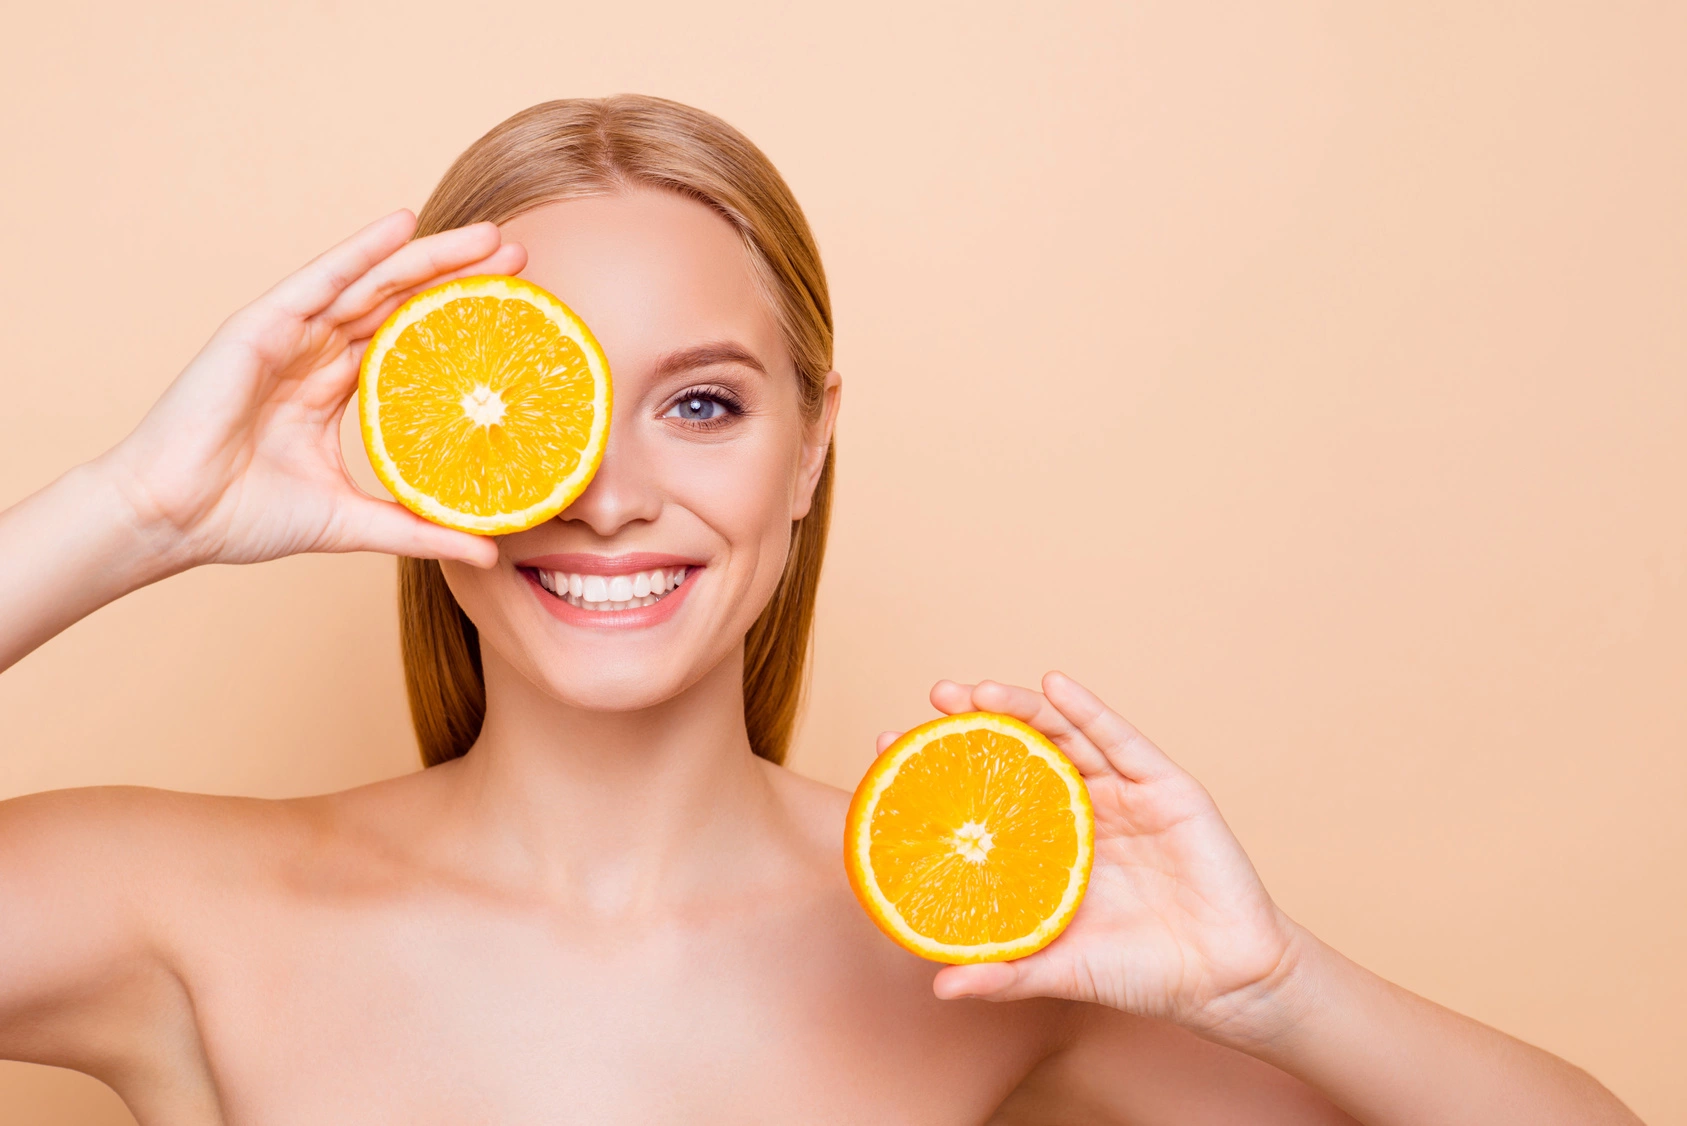 Dieta na cerę - jaka najlepsza? Kobieta trzyma w rękach dwie połówki pomarańczy, przykłada jedną z nich do oka.